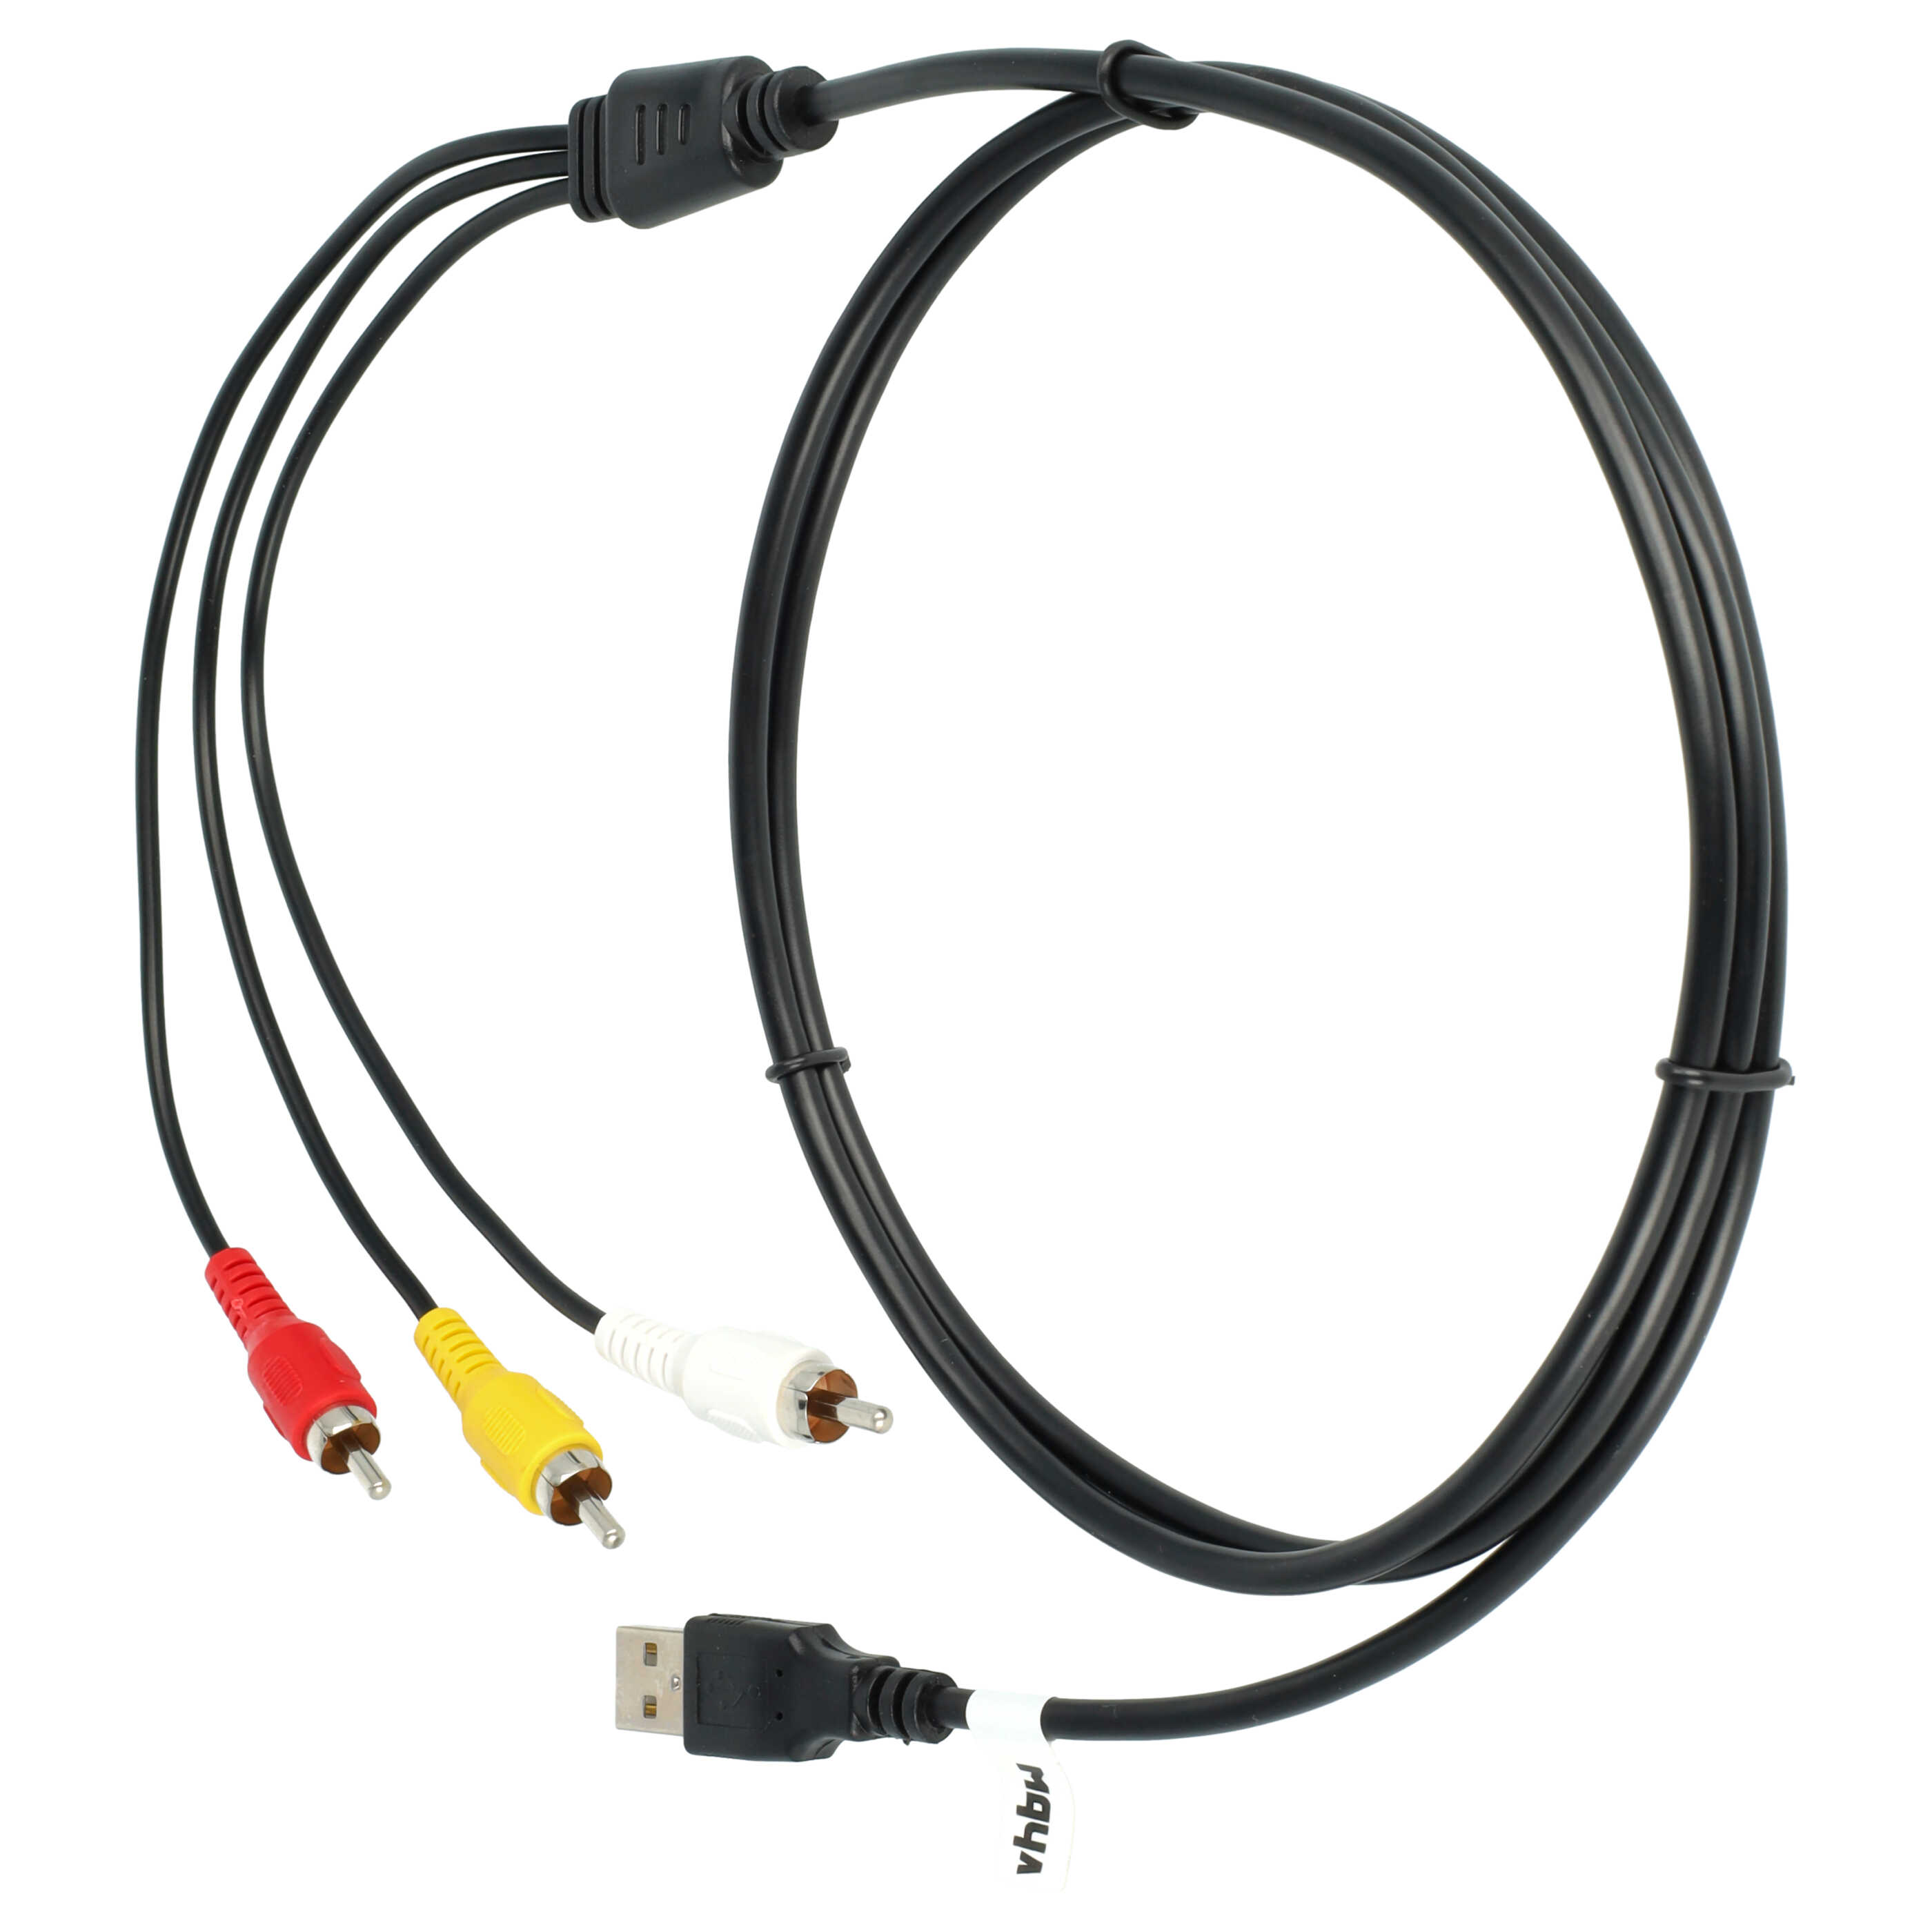 Kabel cinch USB do odtwarzaczy HDD, wieży stereo - USB A na 3 wtyki cinch, 1,4 m